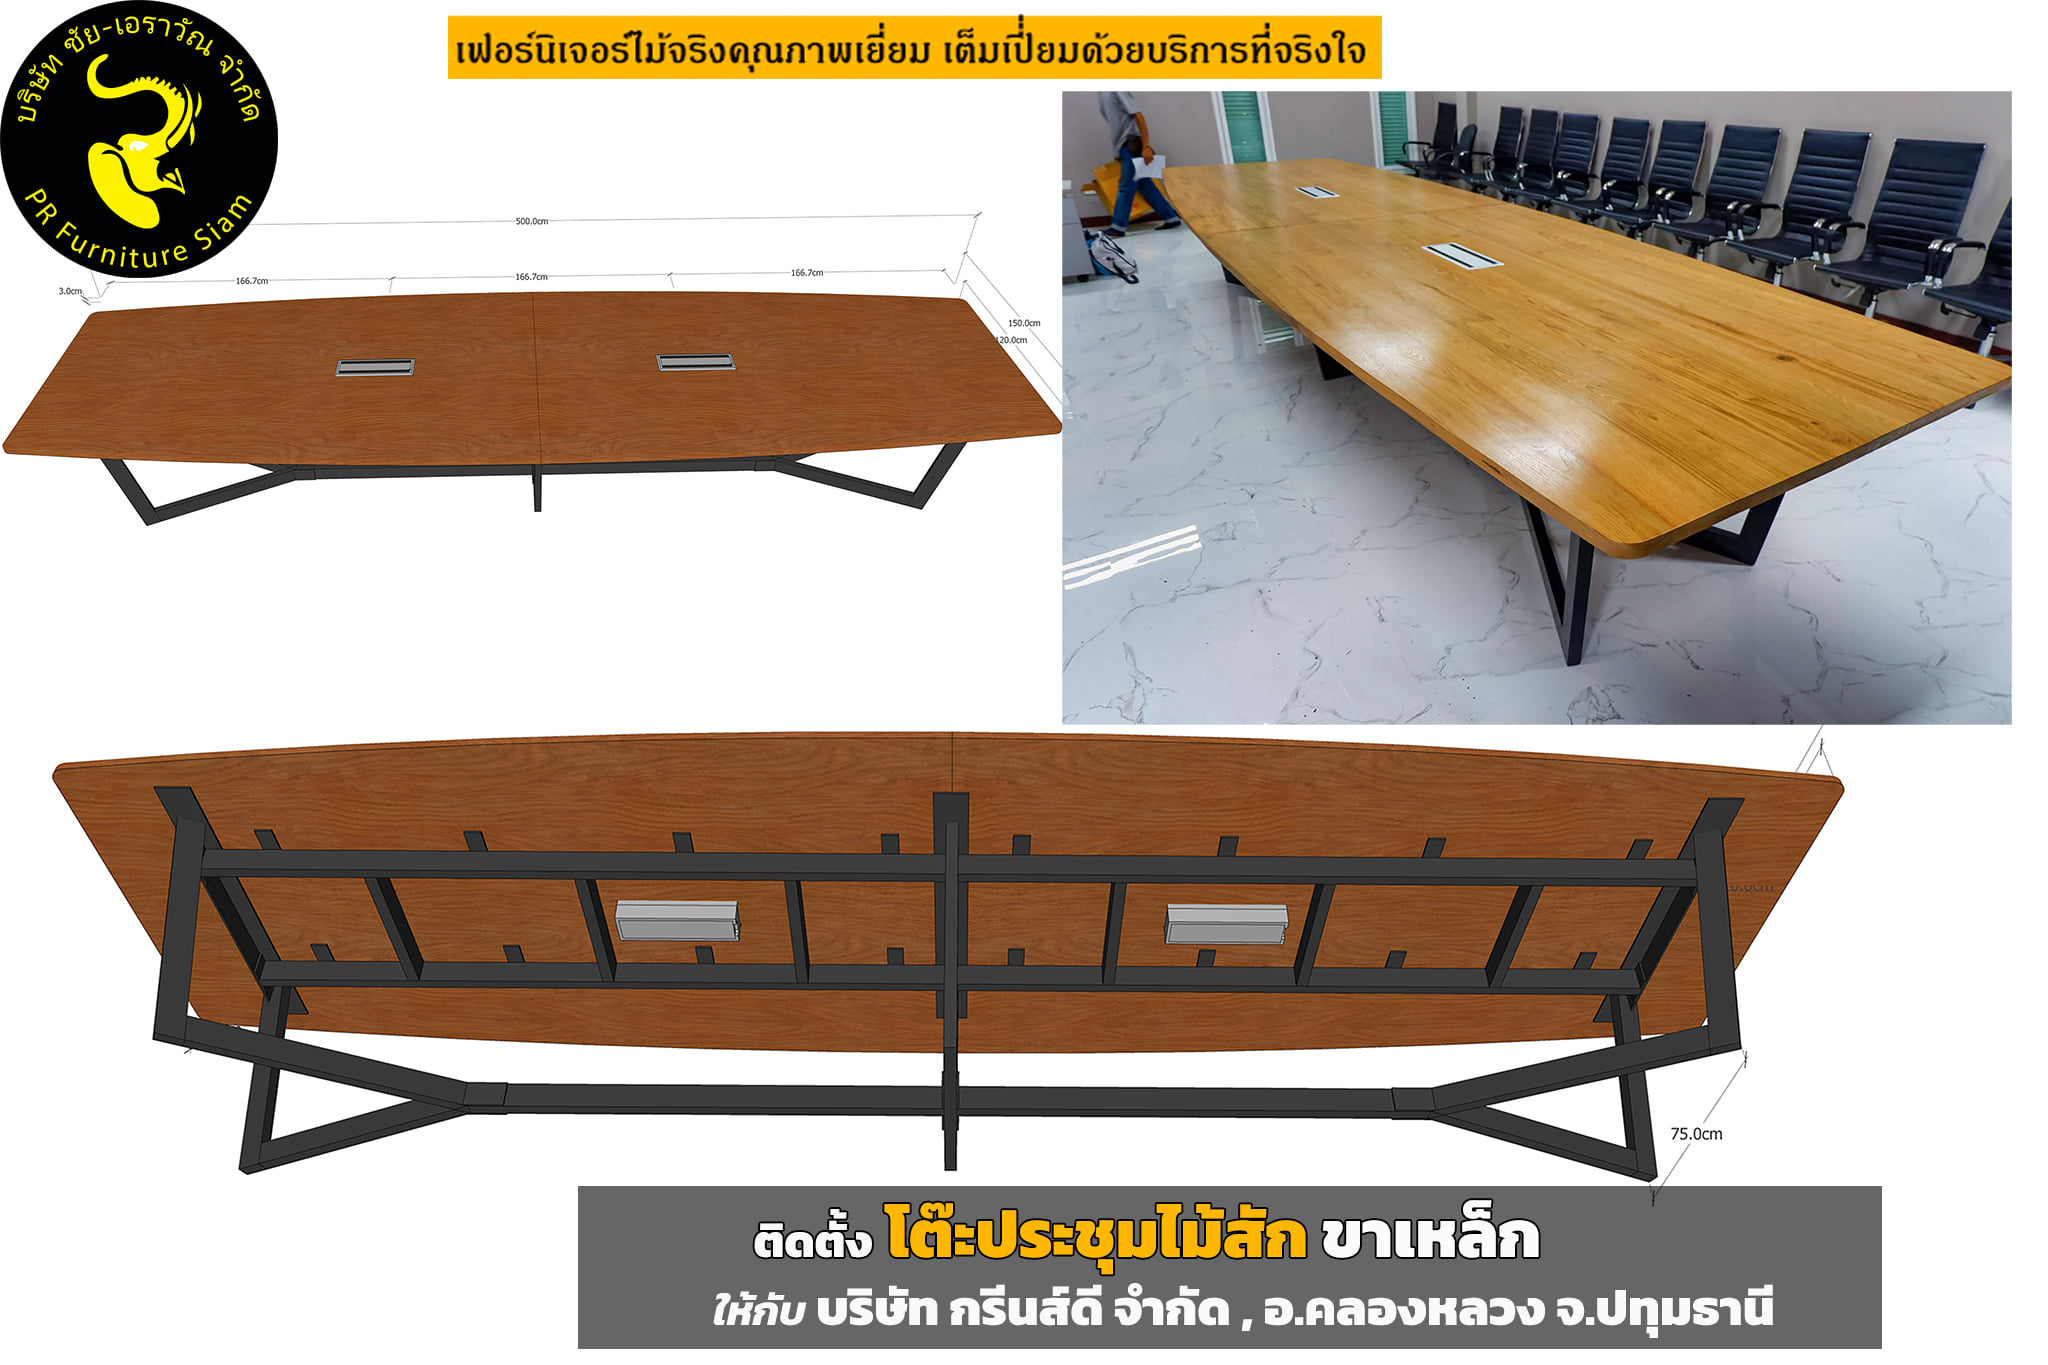 โต๊ะประชุมไม้สัก 5 เมตร ขาเหล็ก ดีไซน์โมเดิร์น สวยงาม บริษัท กรีนส์ดี